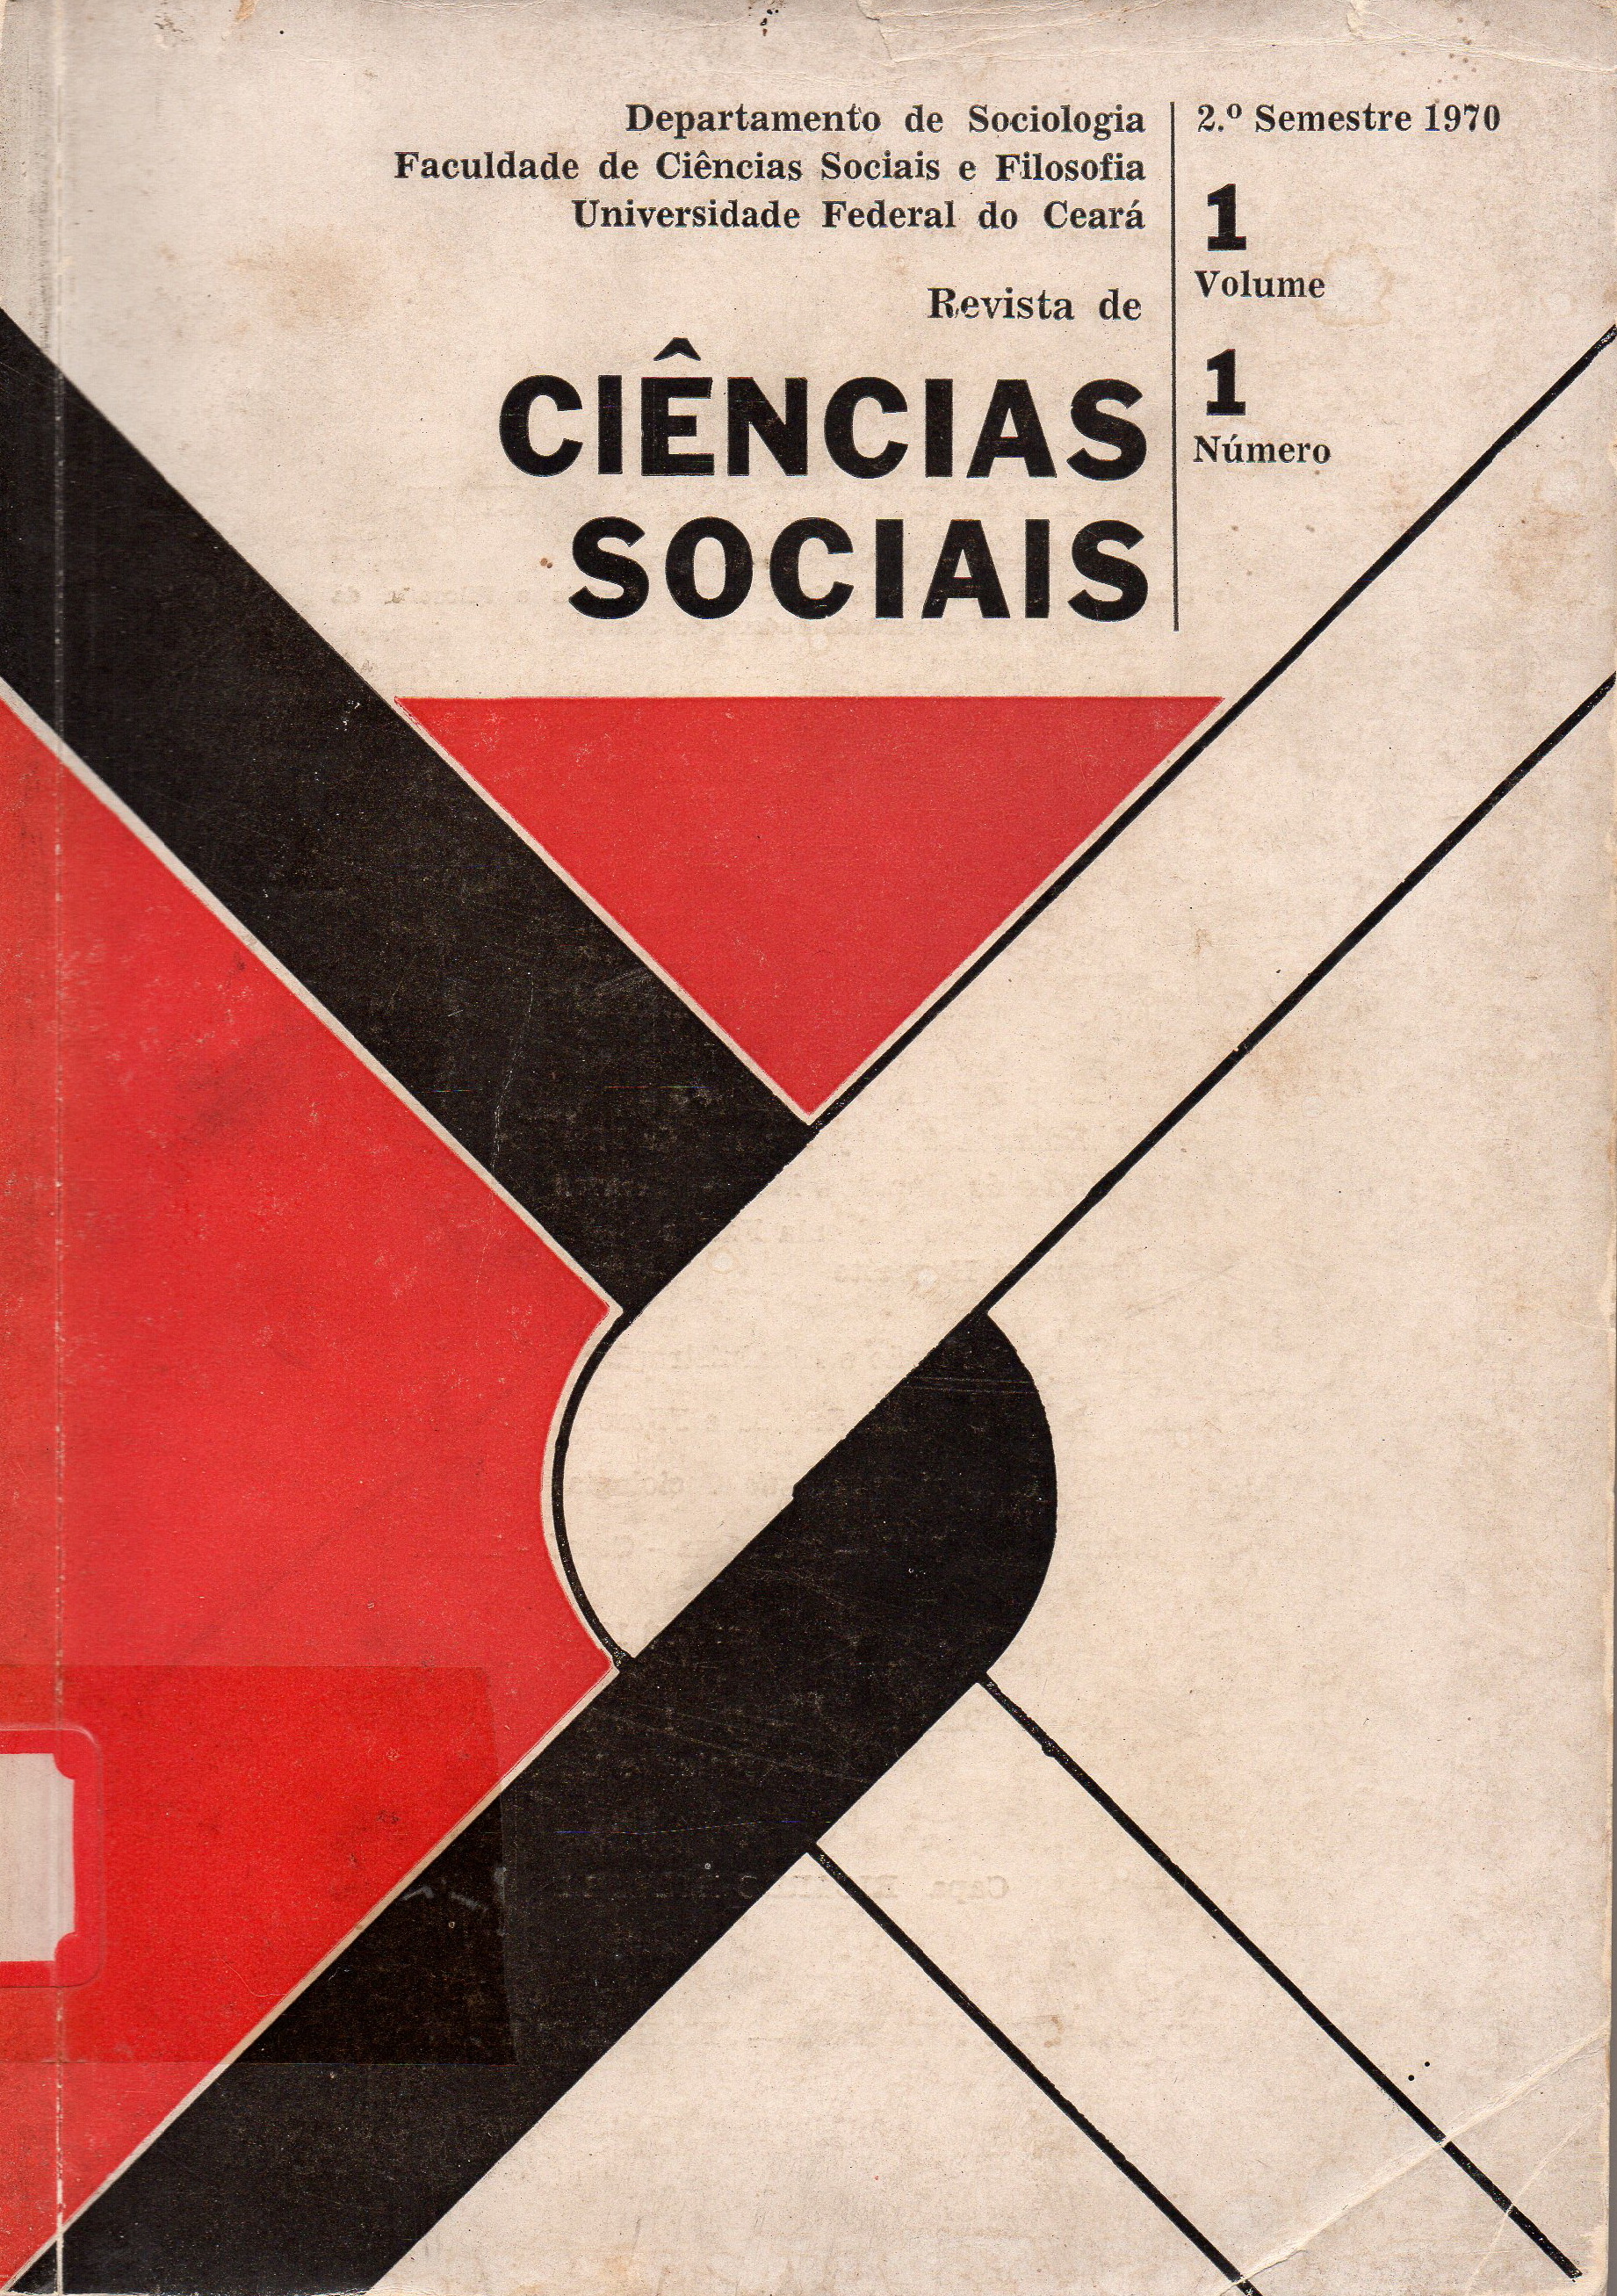 					Visualizar v. 1 n. 1 (1970): Vol. 1 da Revista de Ciências Sociais
				